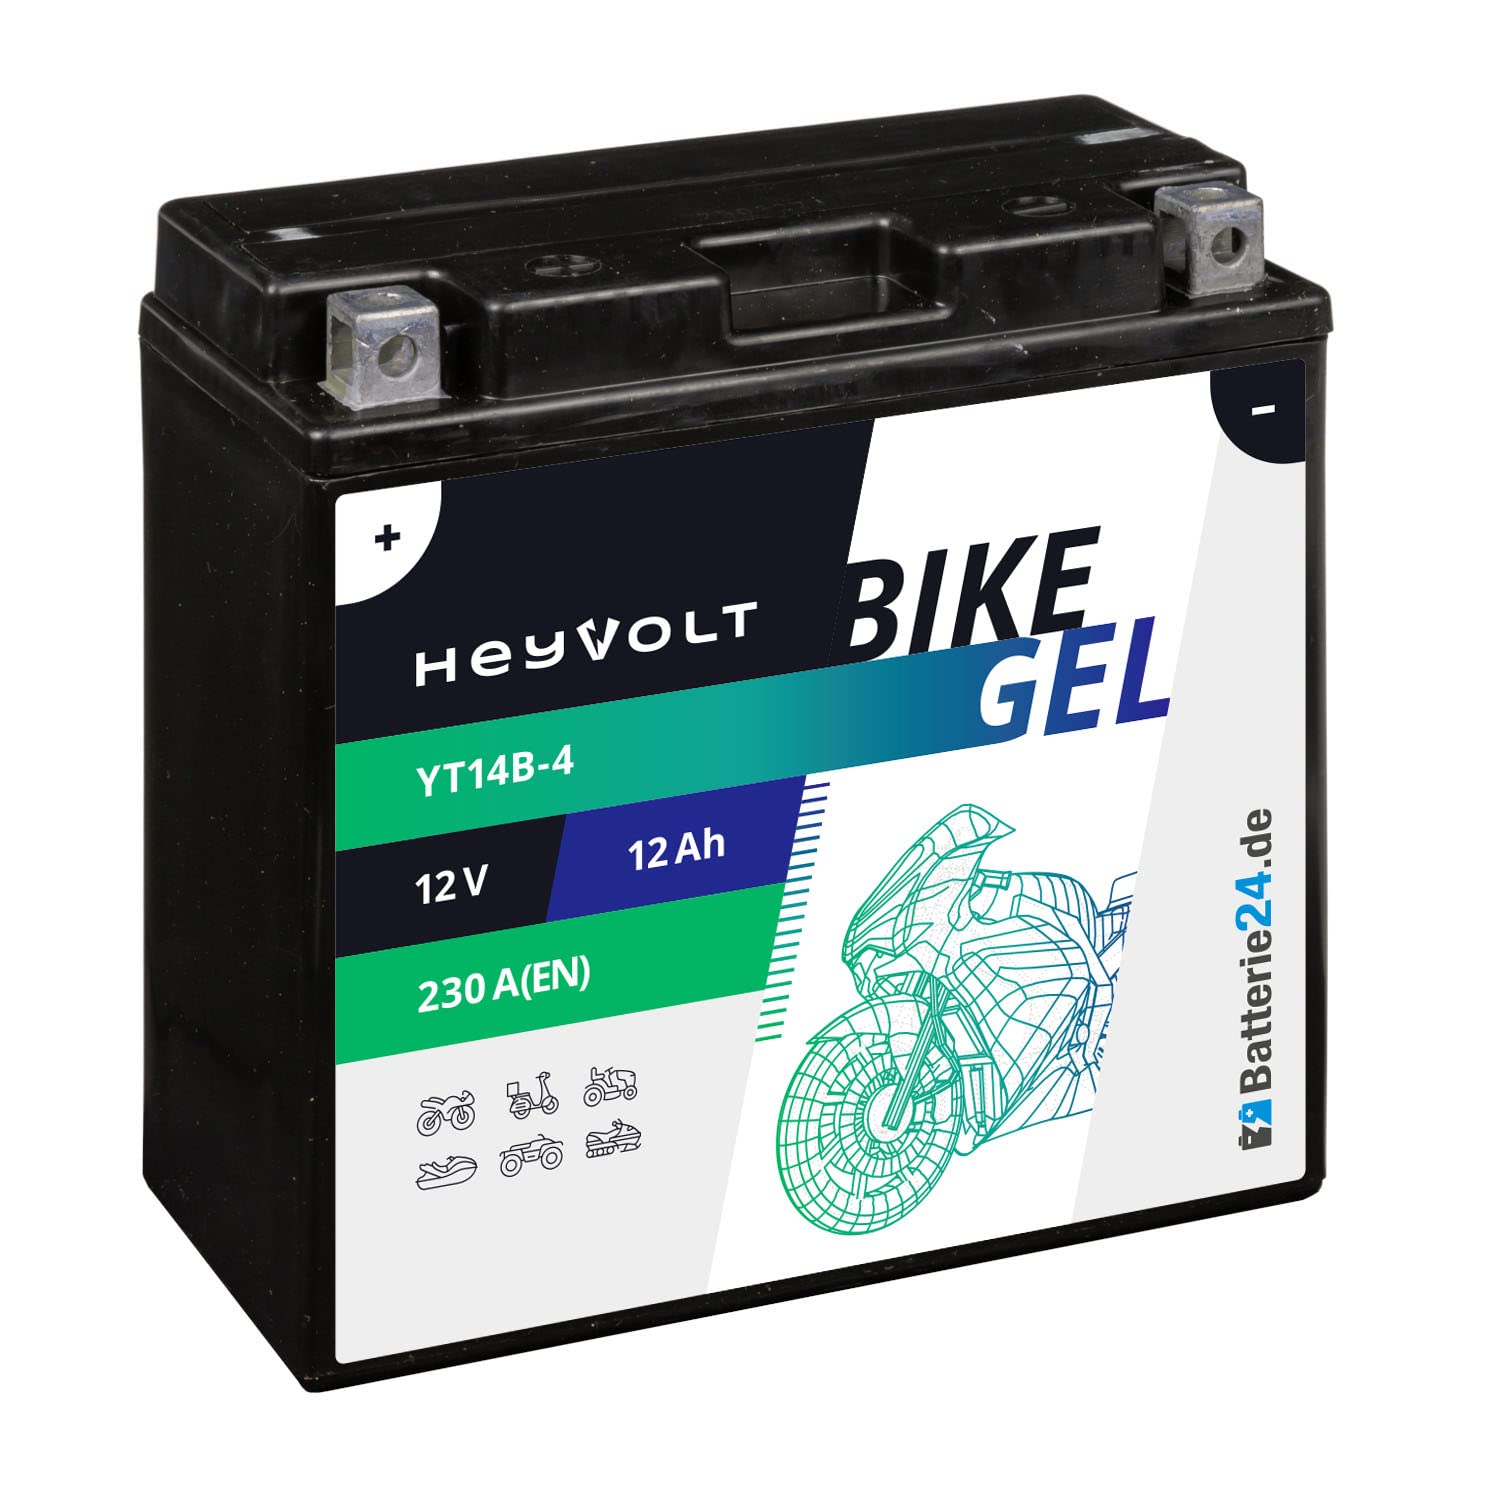 HeyVolt GEL Motorradbatterie 12V 12Ah 51422 YT14B-4 GT14B-4 YT14B-BS GEL12-14B-4 51201 von Batterie24.de